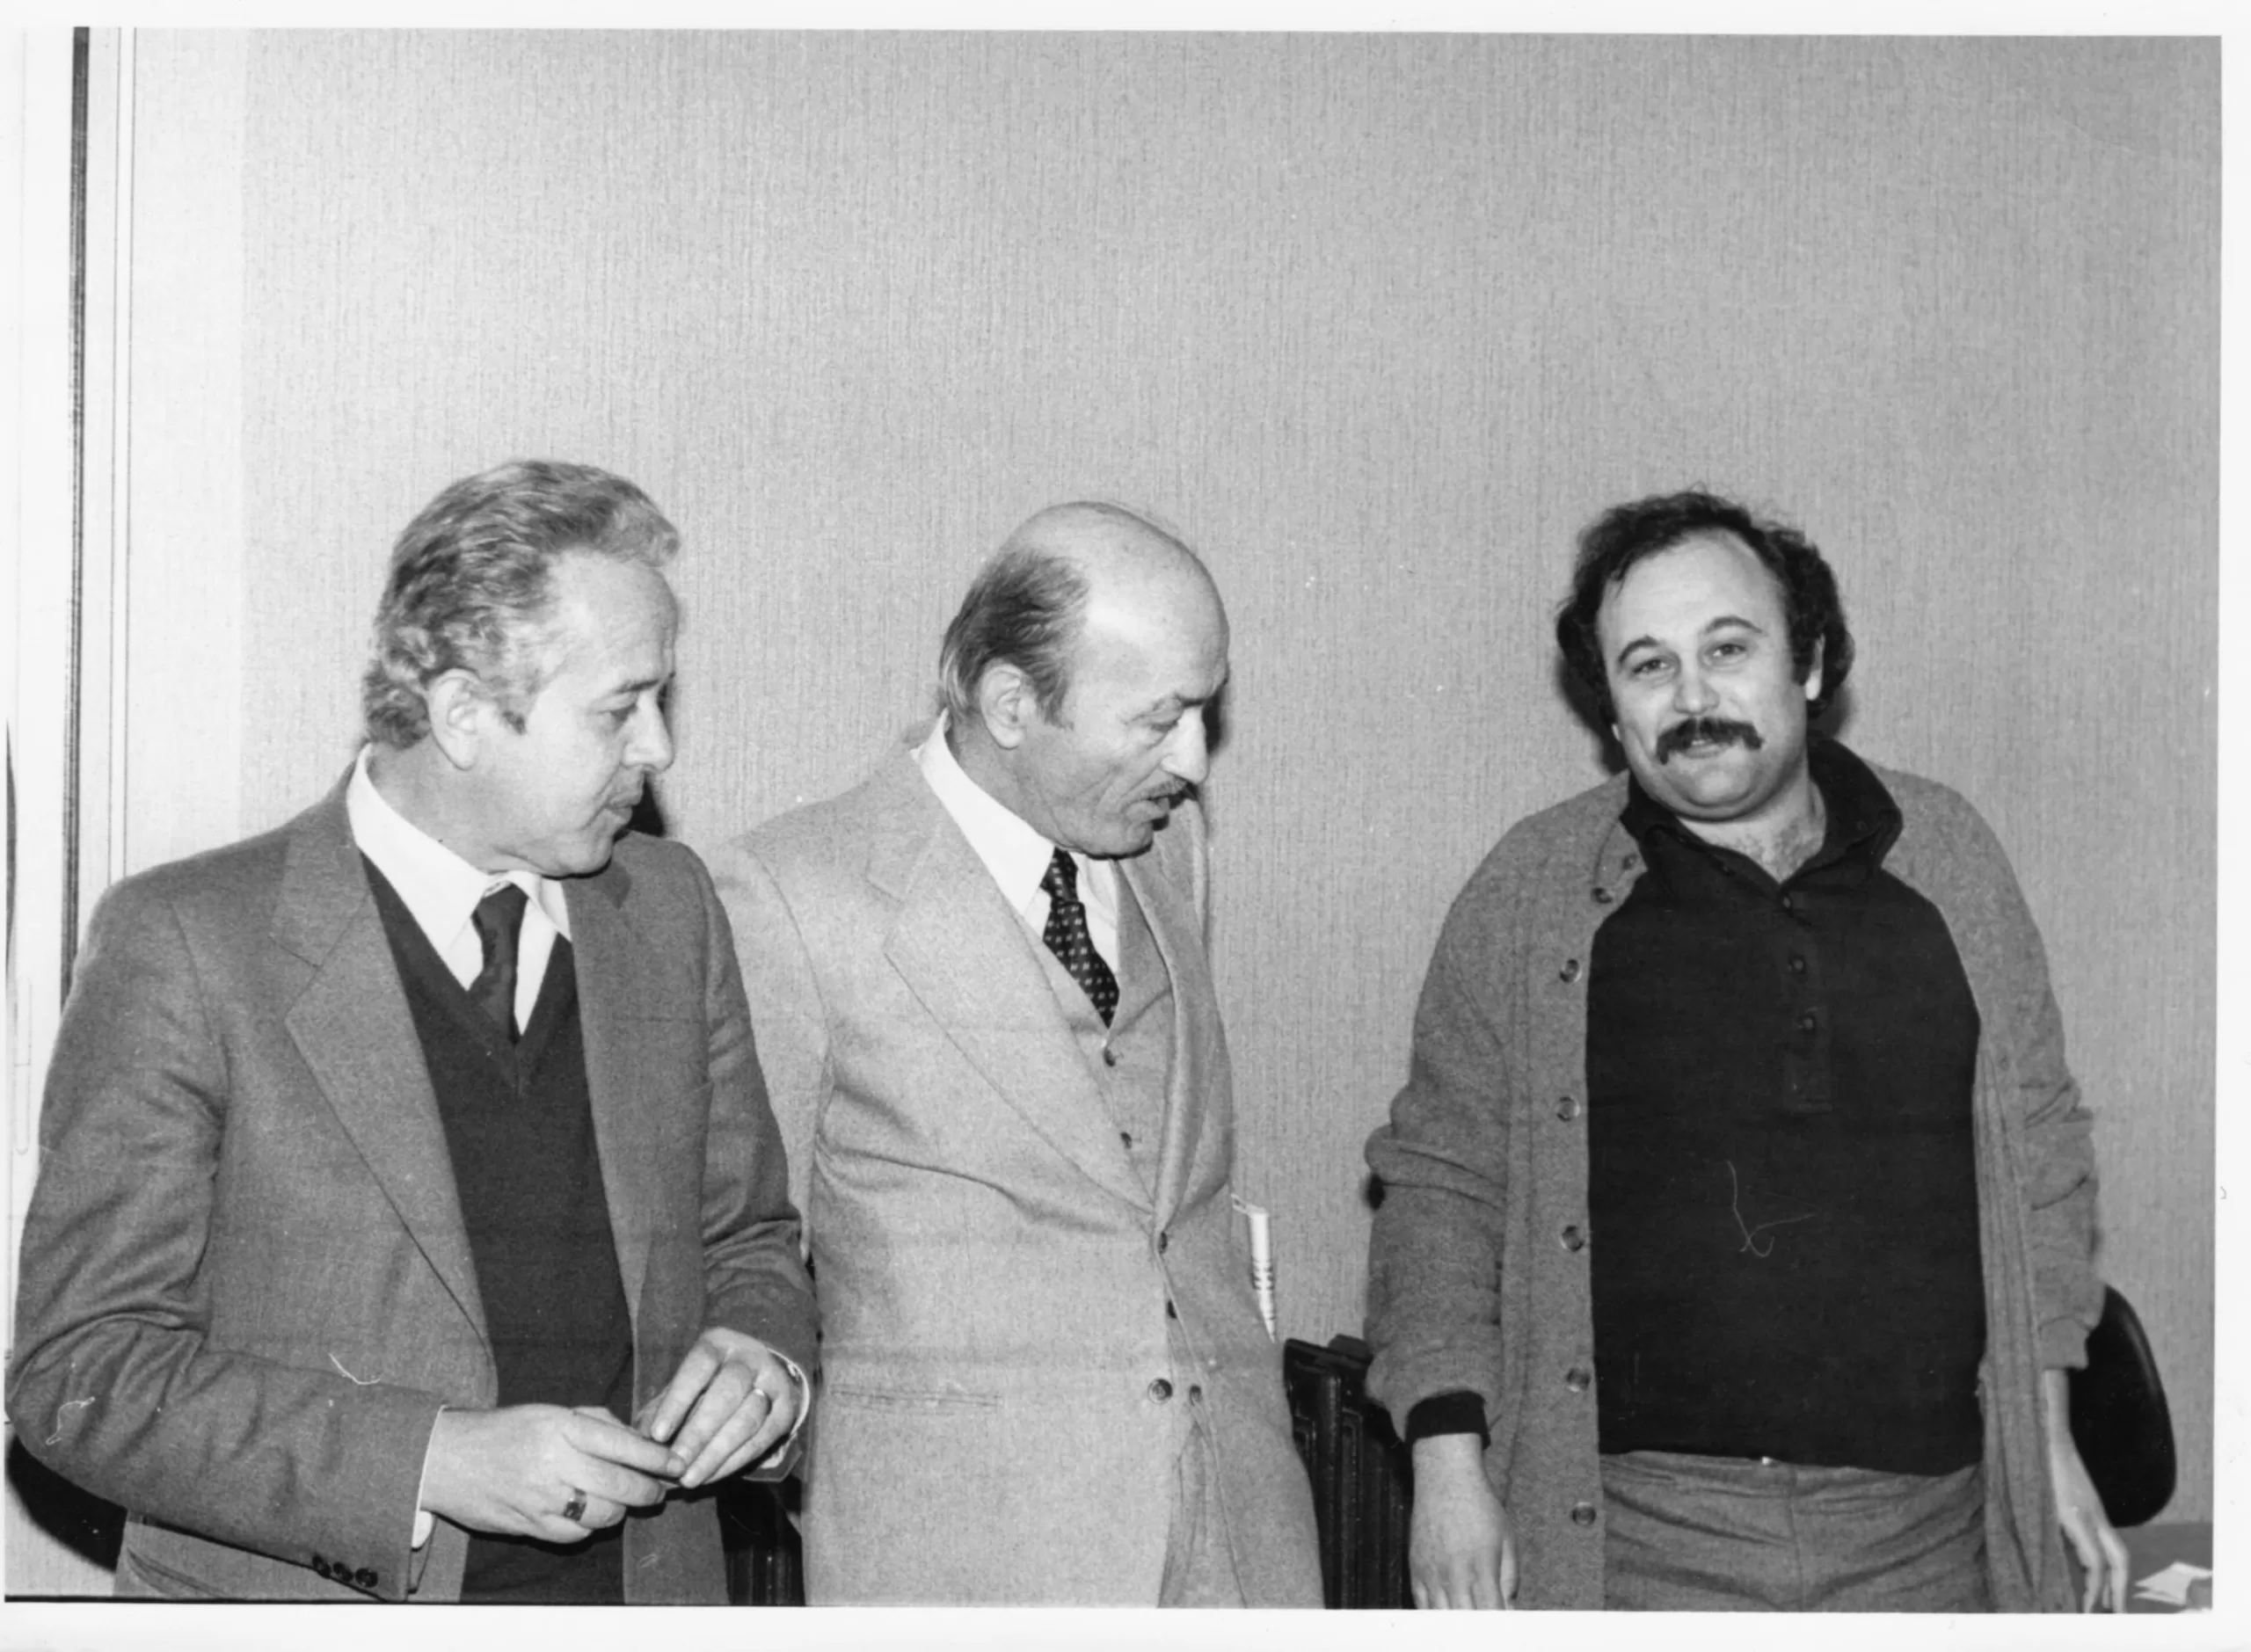 1979, 7 marzo. Auguri per i 70 anni di Nicoletti. Da sx, Zeno Zaffagnini, Vito Nicoletti, Nando Piccari